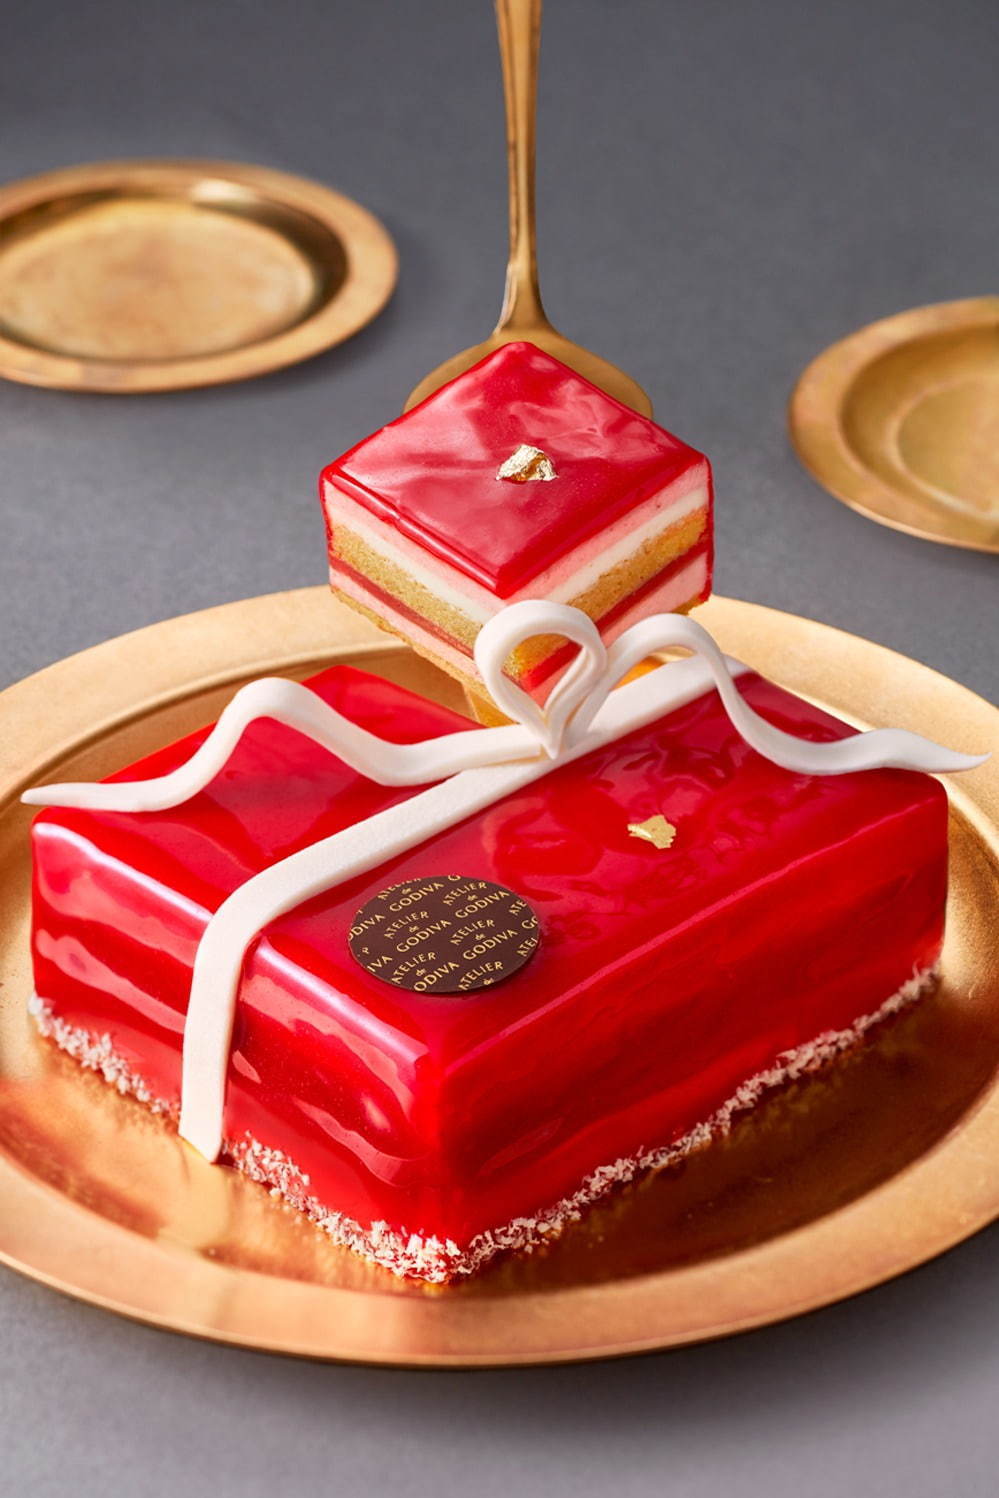 アトリエ ドゥ ゴディバのクリスマススイーツ、ホワイトチョコのリボンを飾ったケーキやサンタマカロン | 写真